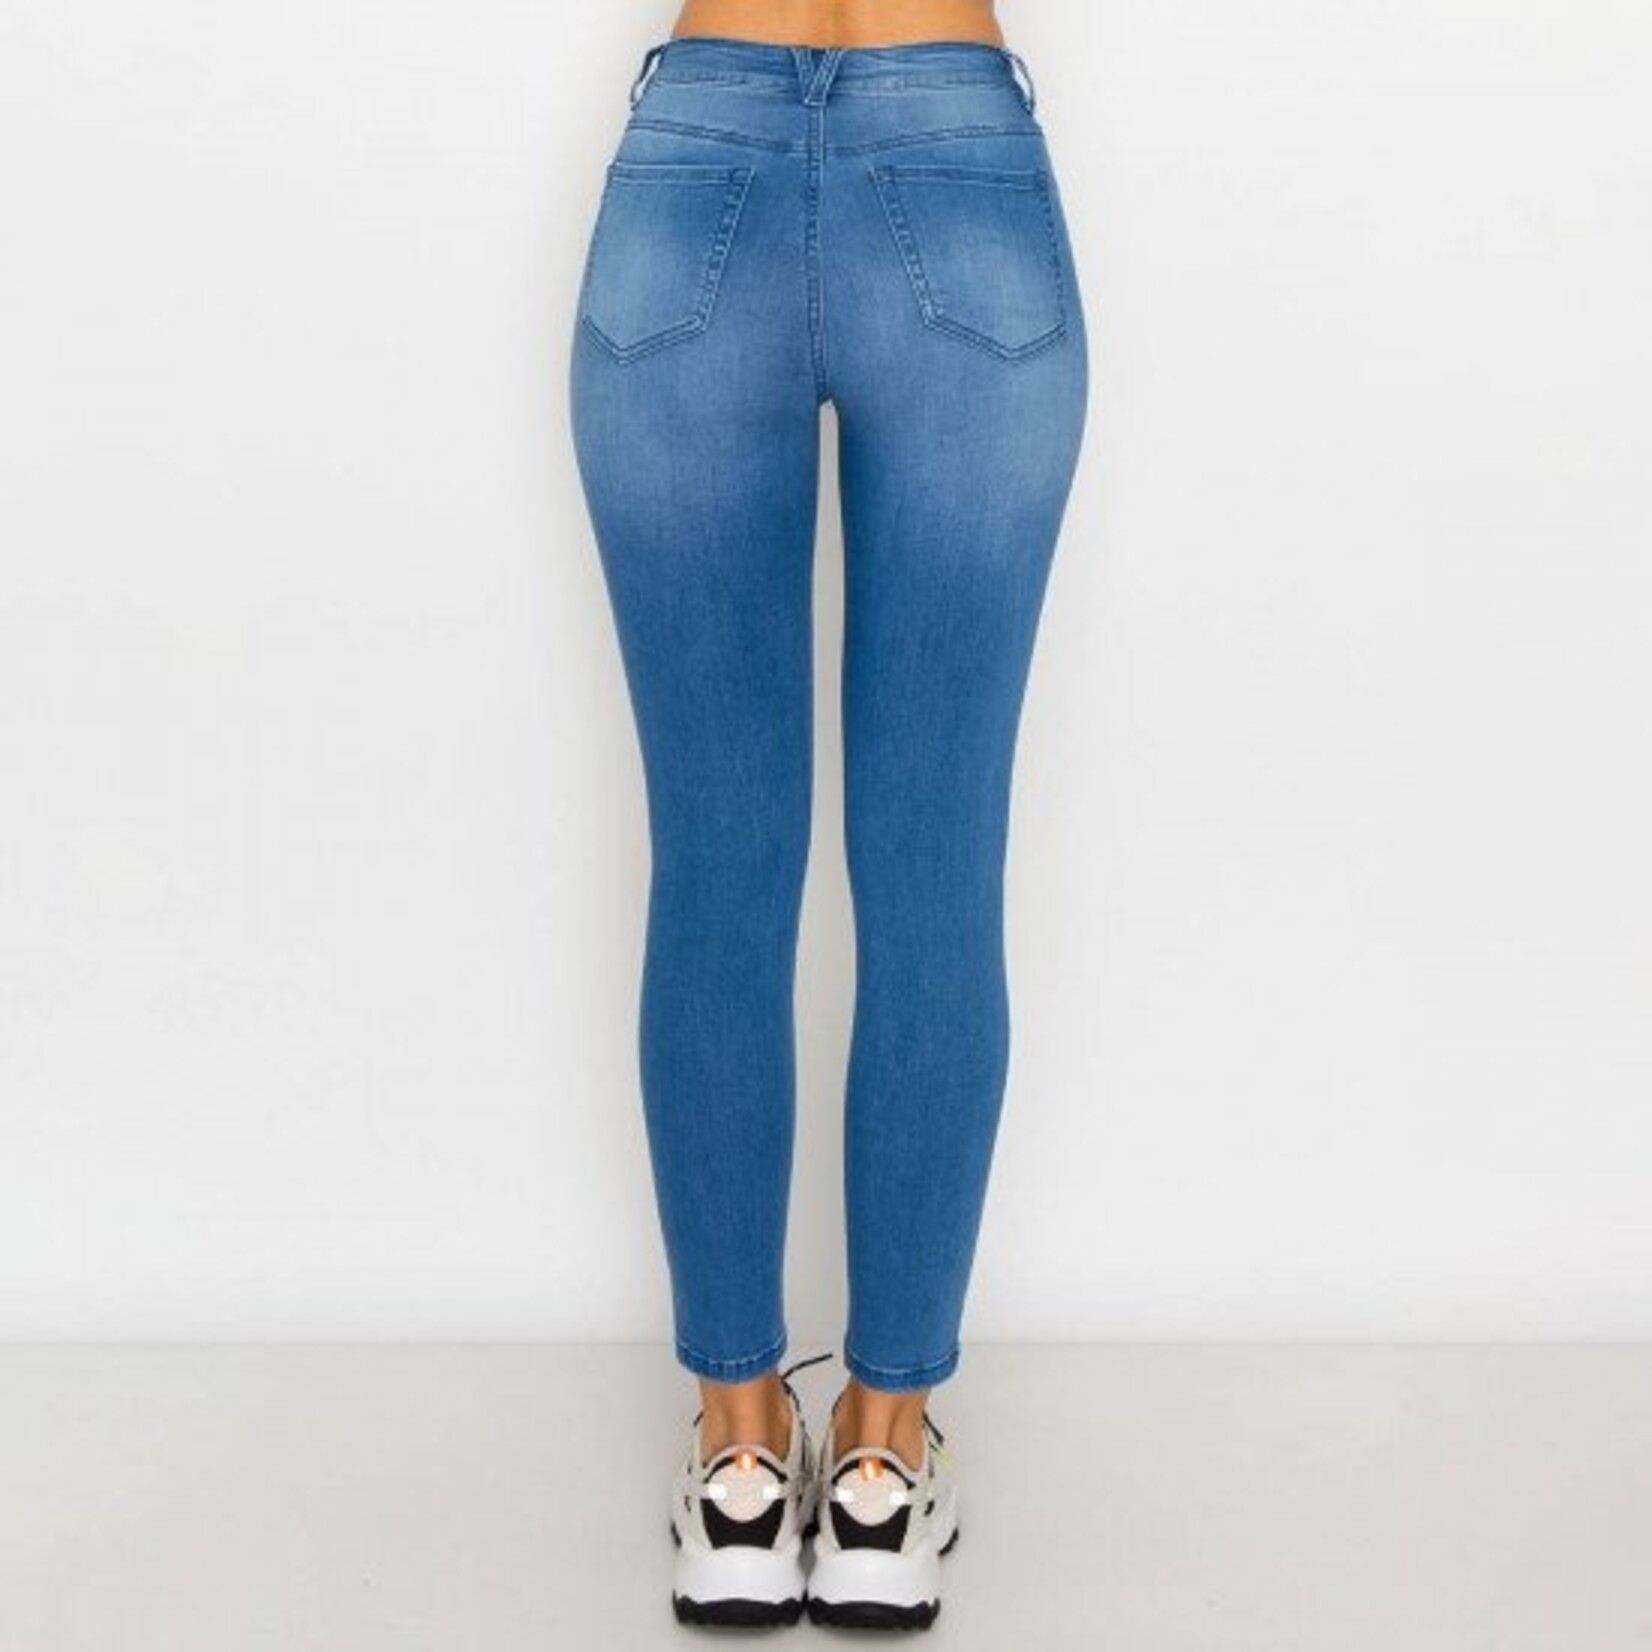 Wax Jeans Wax Jean - Modal Fabric Basic Skinny Jean - 90238